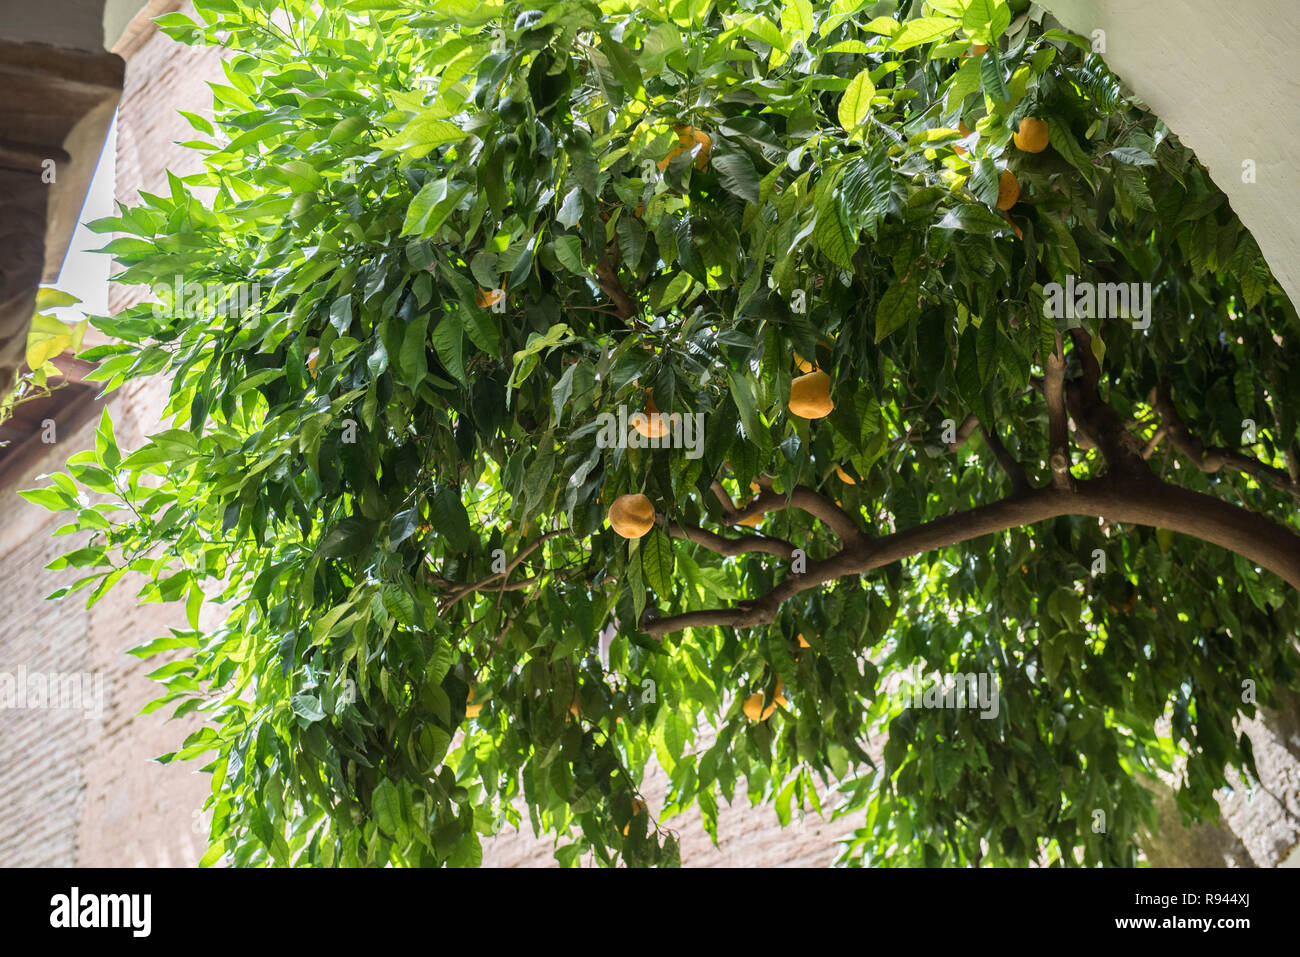 Nispero Tree With Fruits Stock Photo